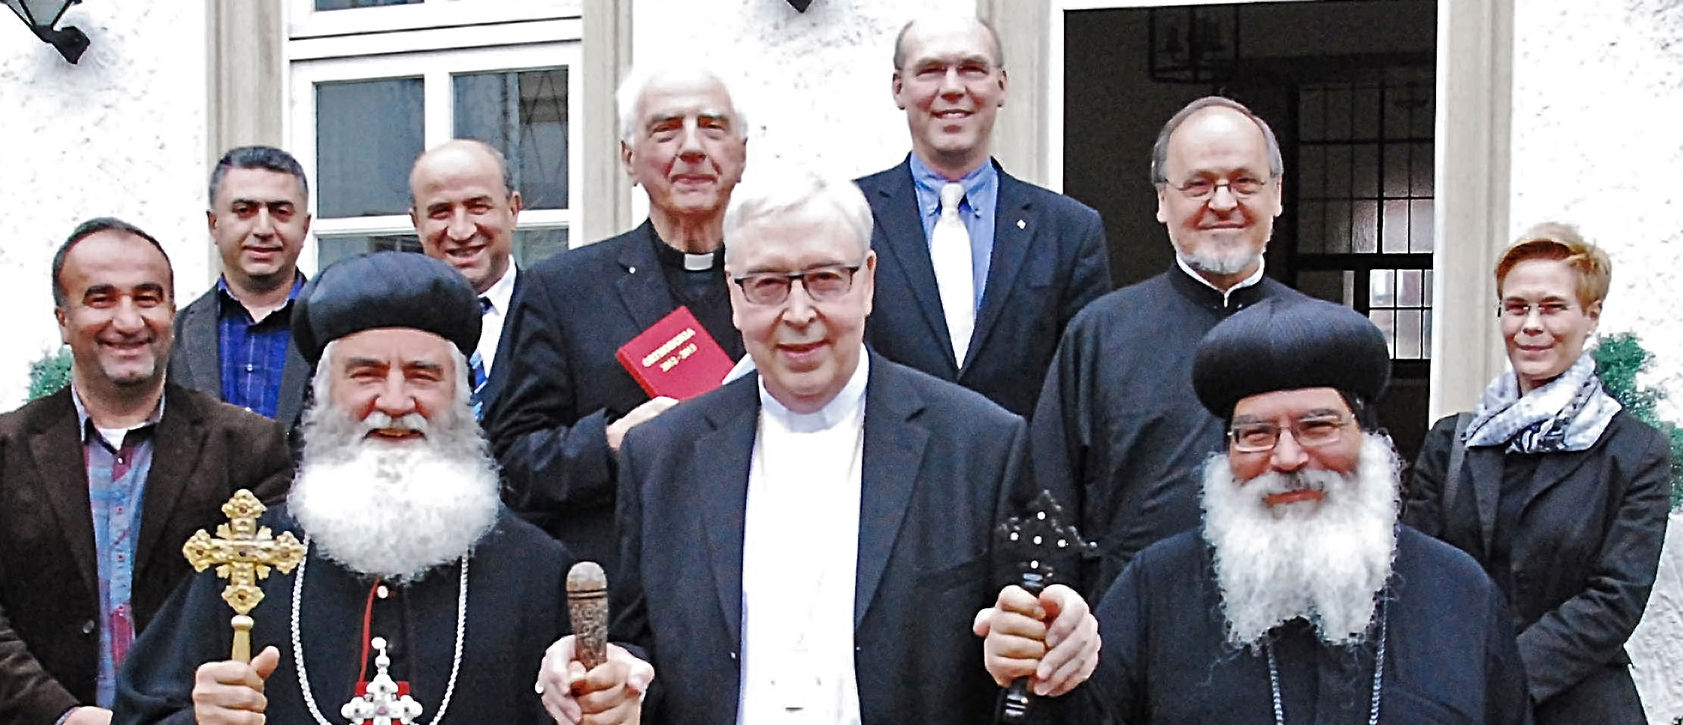 Gruppenbild der syrisch-orthodoxen Delegation mit Bischof Trelle.